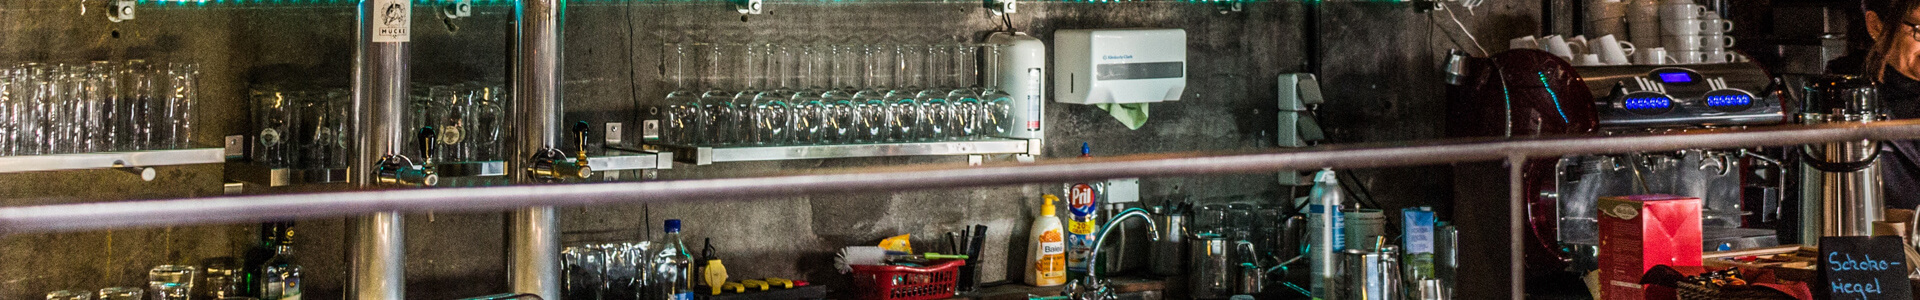 Gläser, Spülbecken und Geschirr hinter dem Tresen einer Bar.